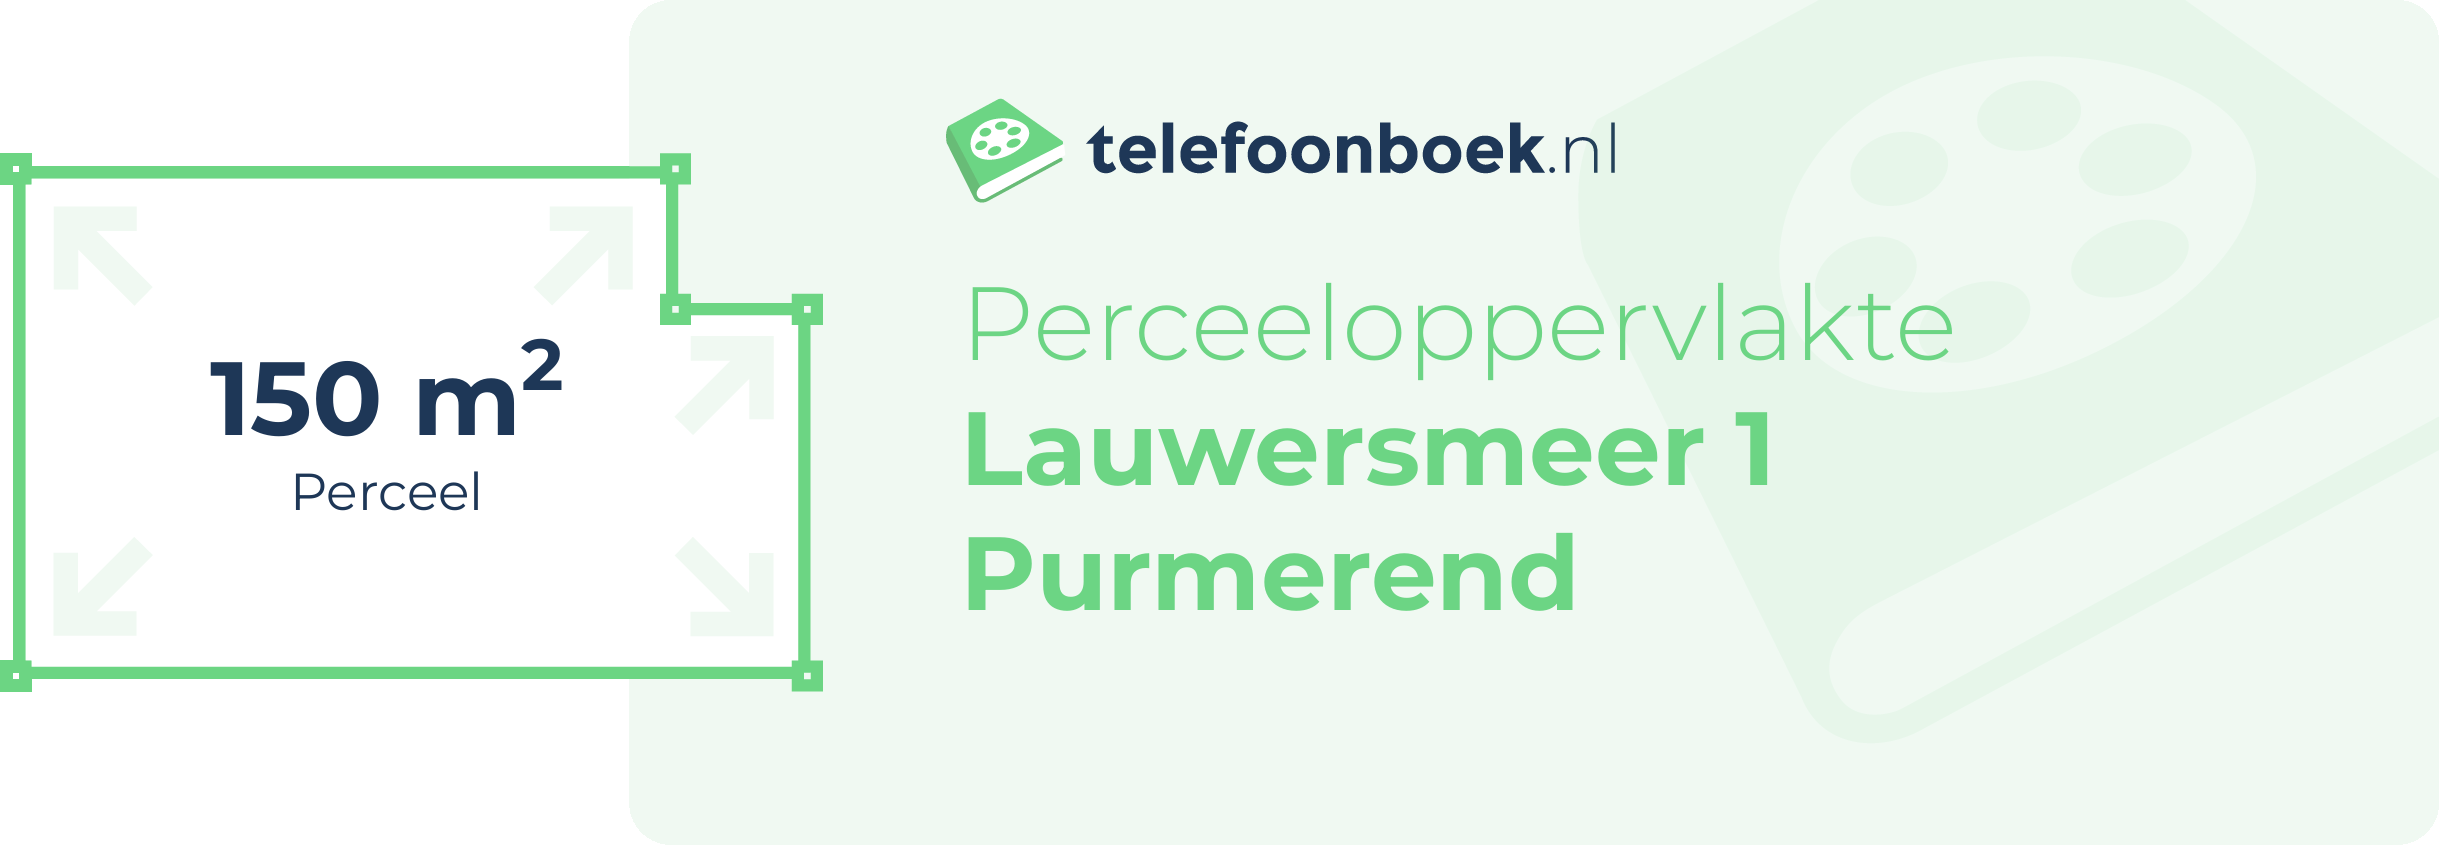 Perceeloppervlakte Lauwersmeer 1 Purmerend